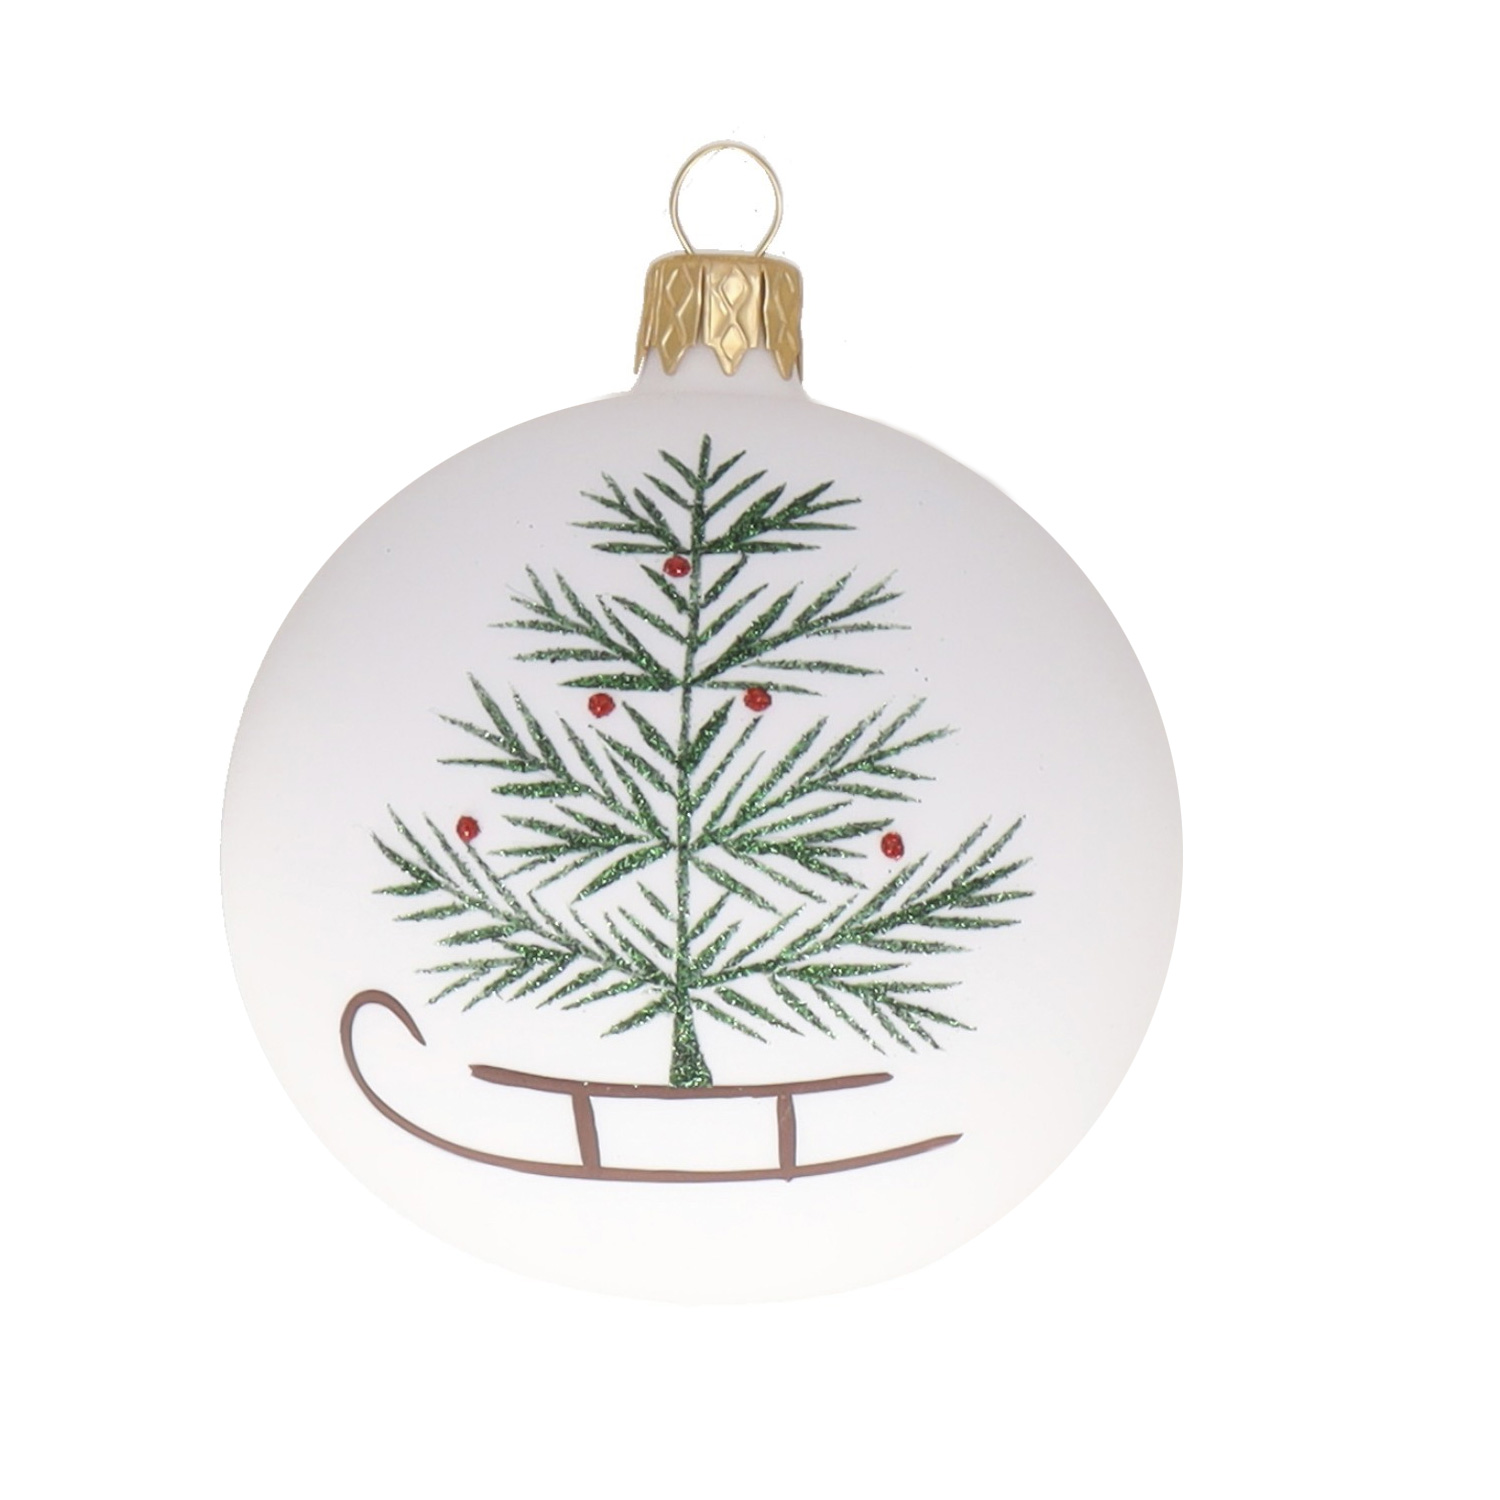 Weihnachtskugel "Schlitten mit Baum" grün-braun-weiß, D. ca. 8 cm, handbemalt, weiß matt